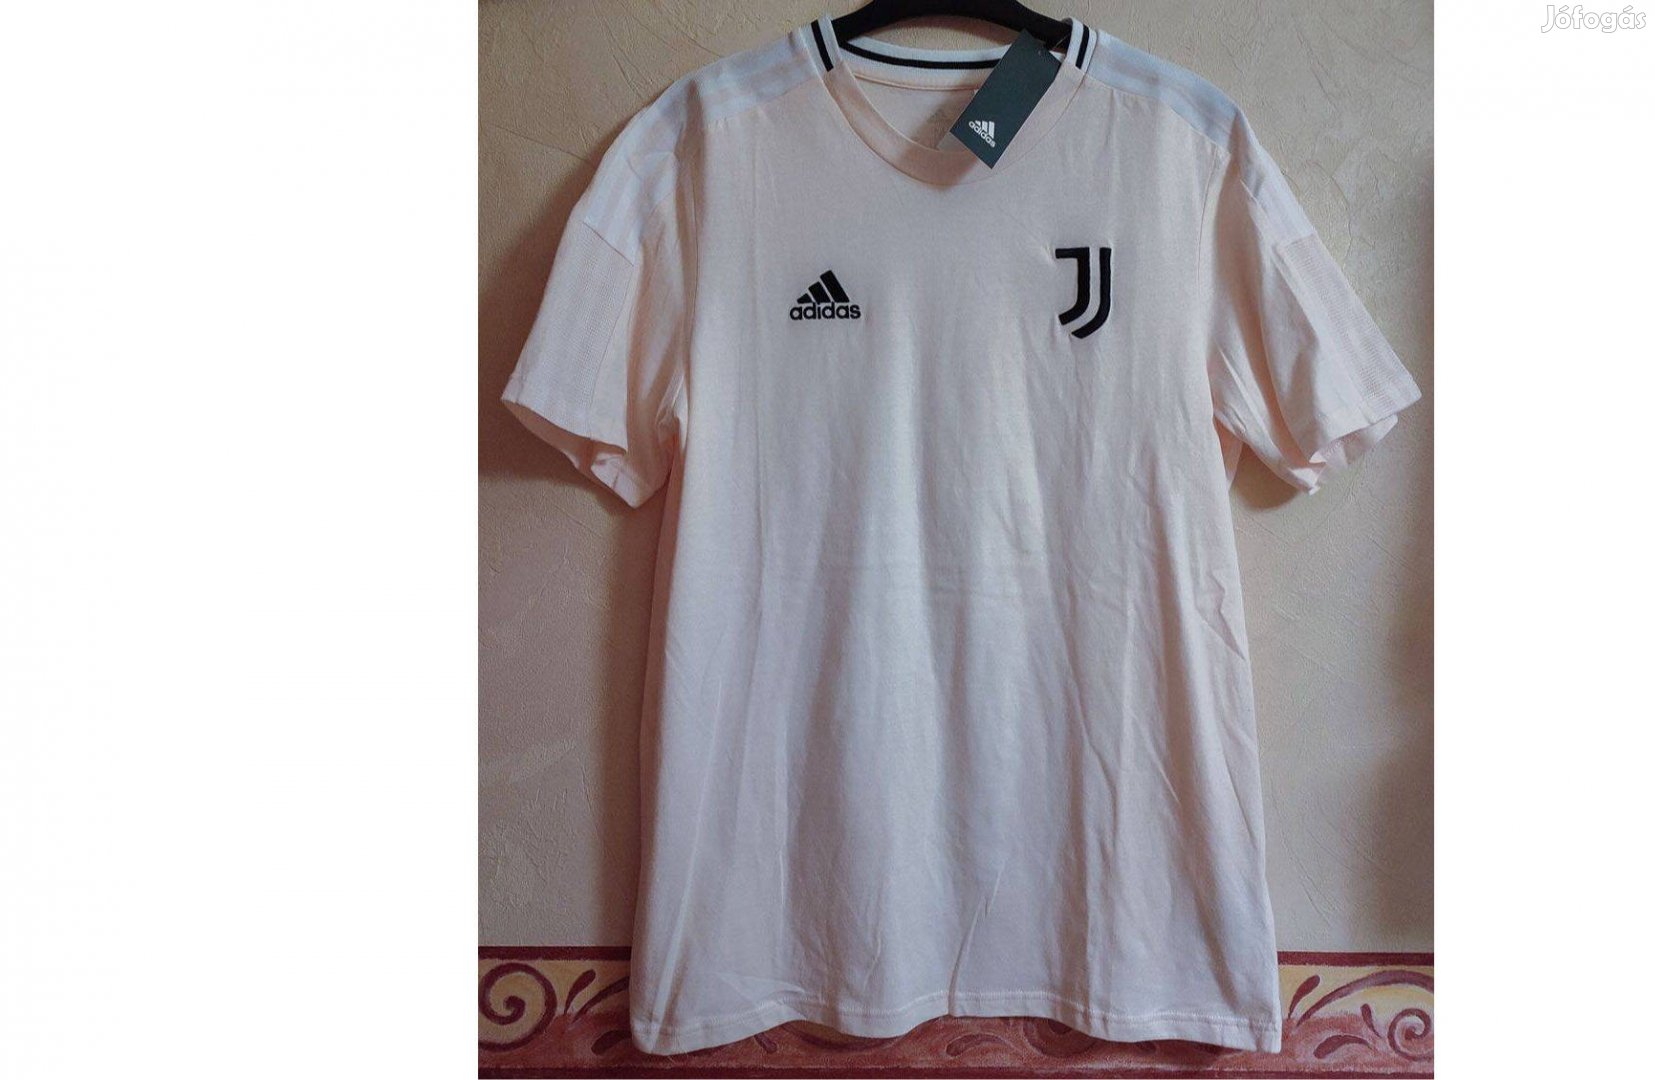 Juventus eredeti adidas barack színű póló (M-es)